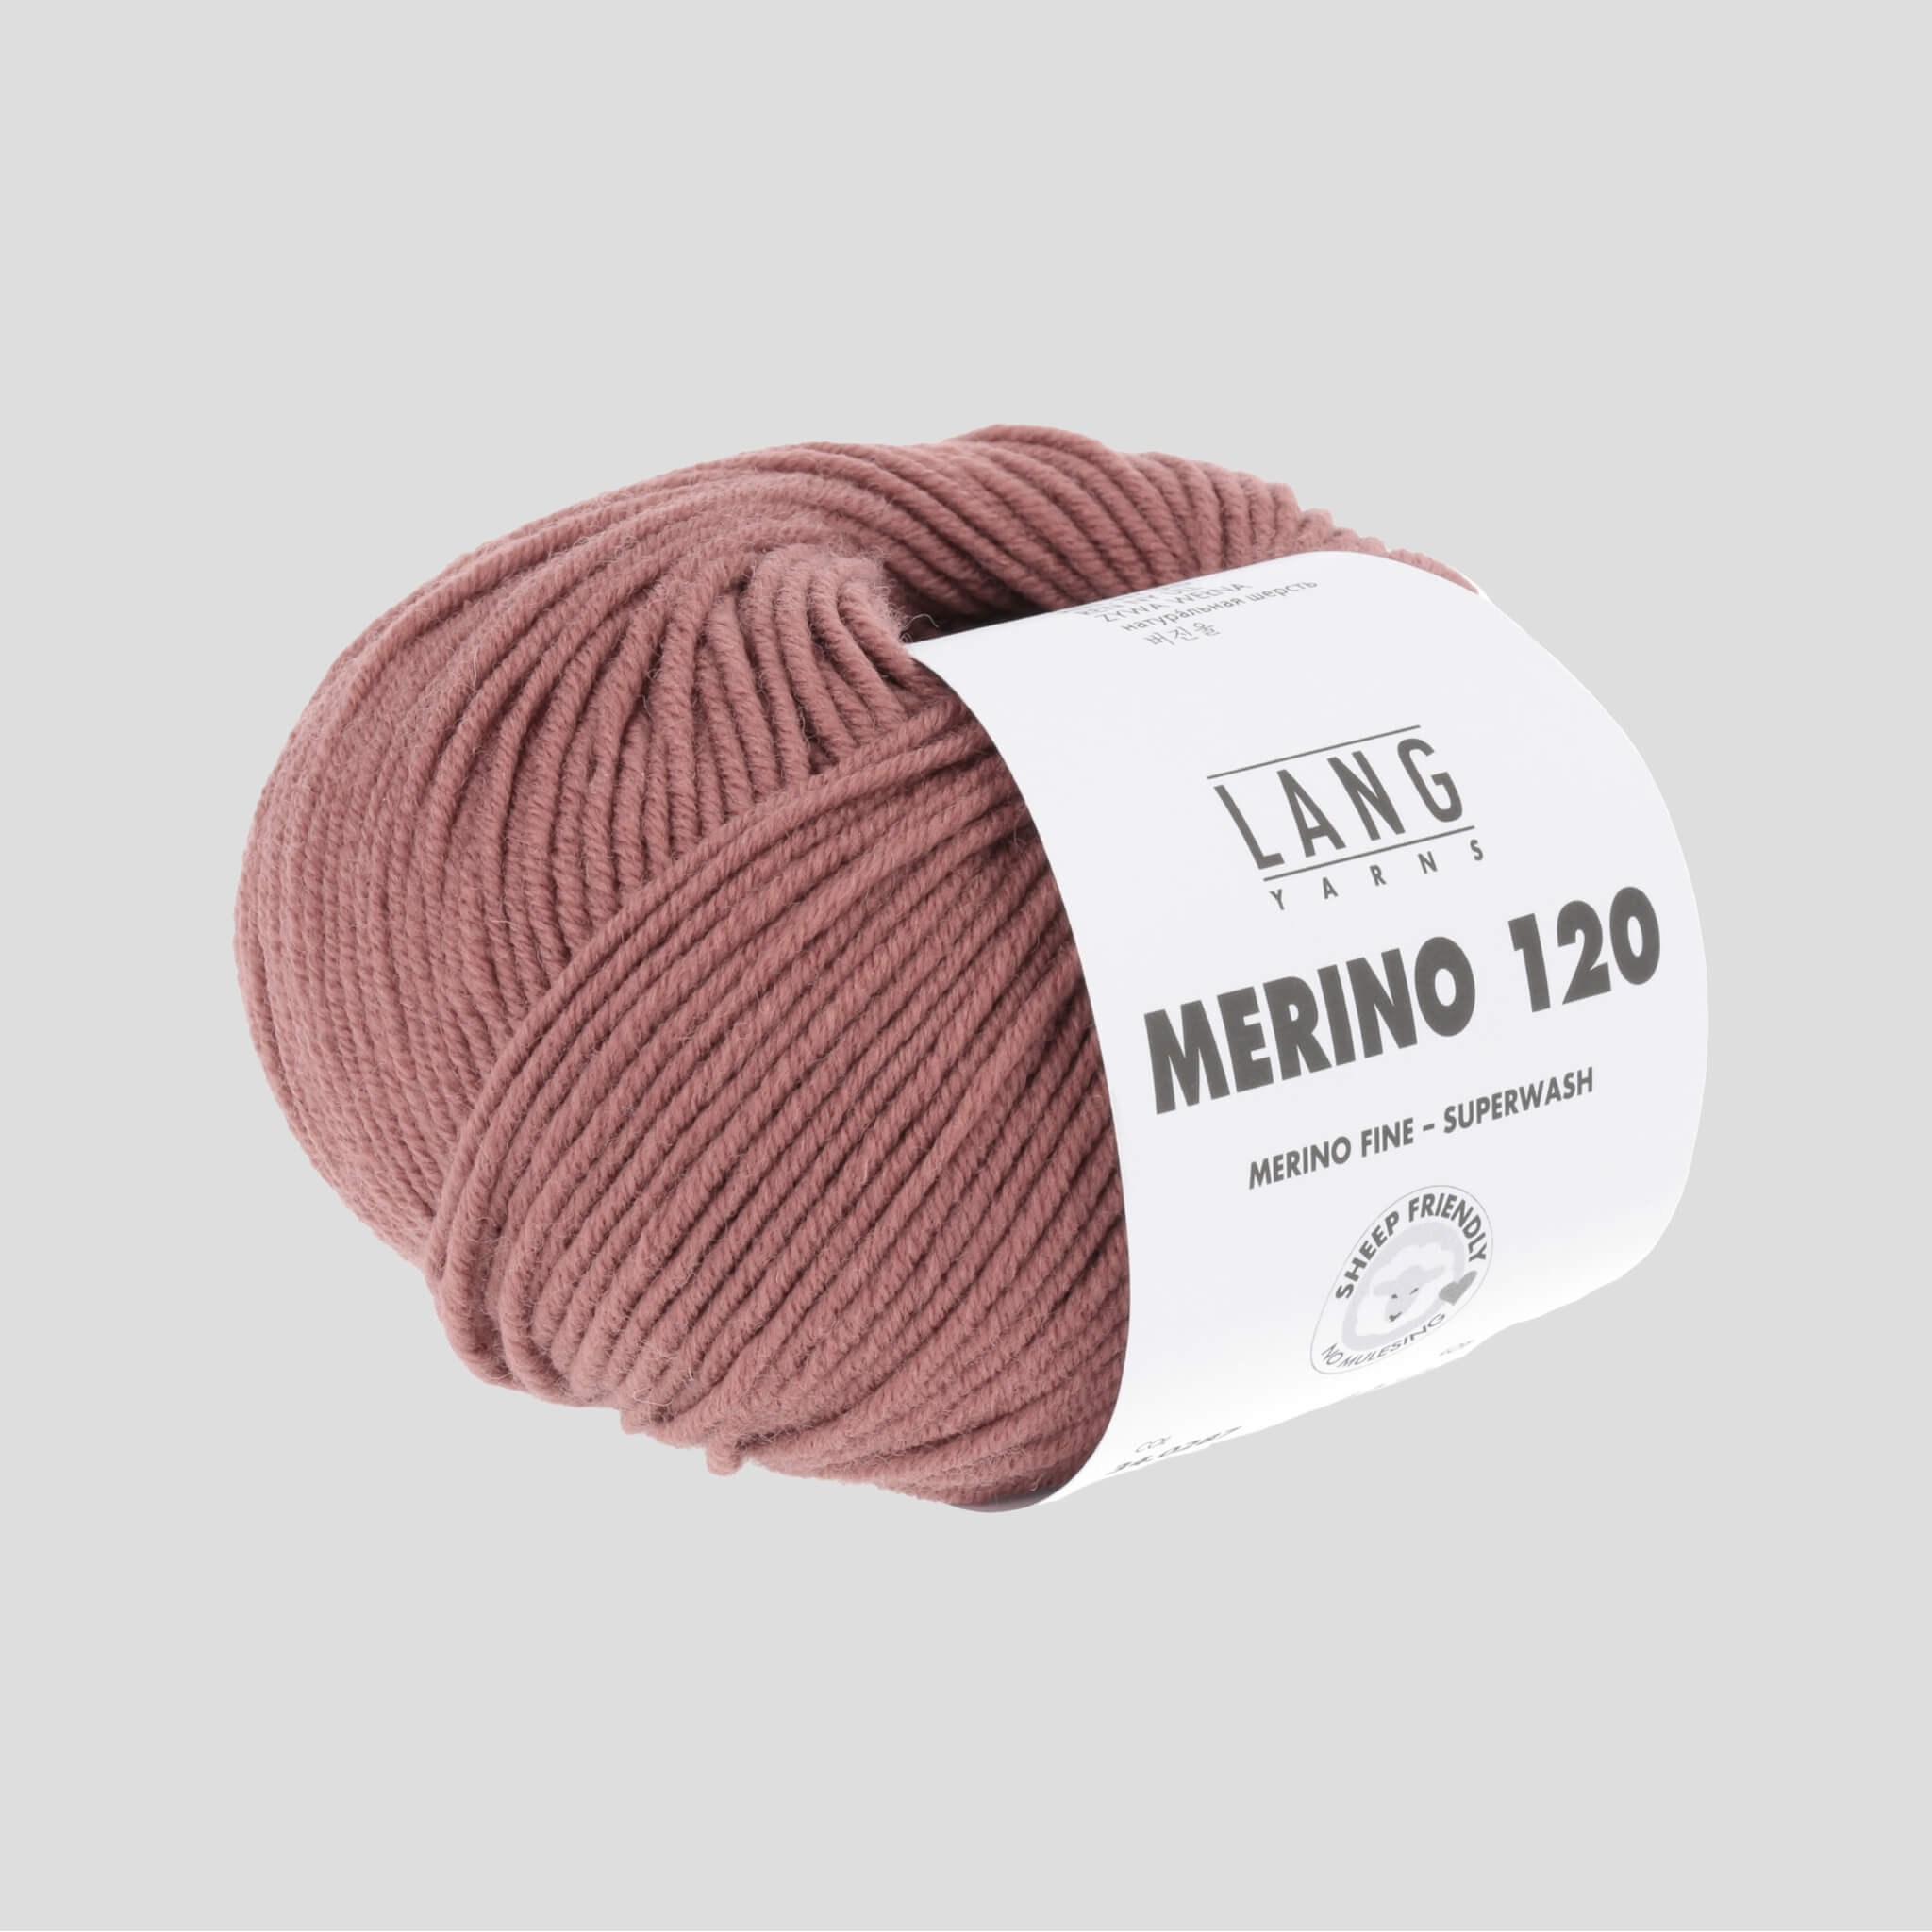 Merino 120, farve 0287 - fra Lang | Lang Yarn | HobbyTilbud.dk